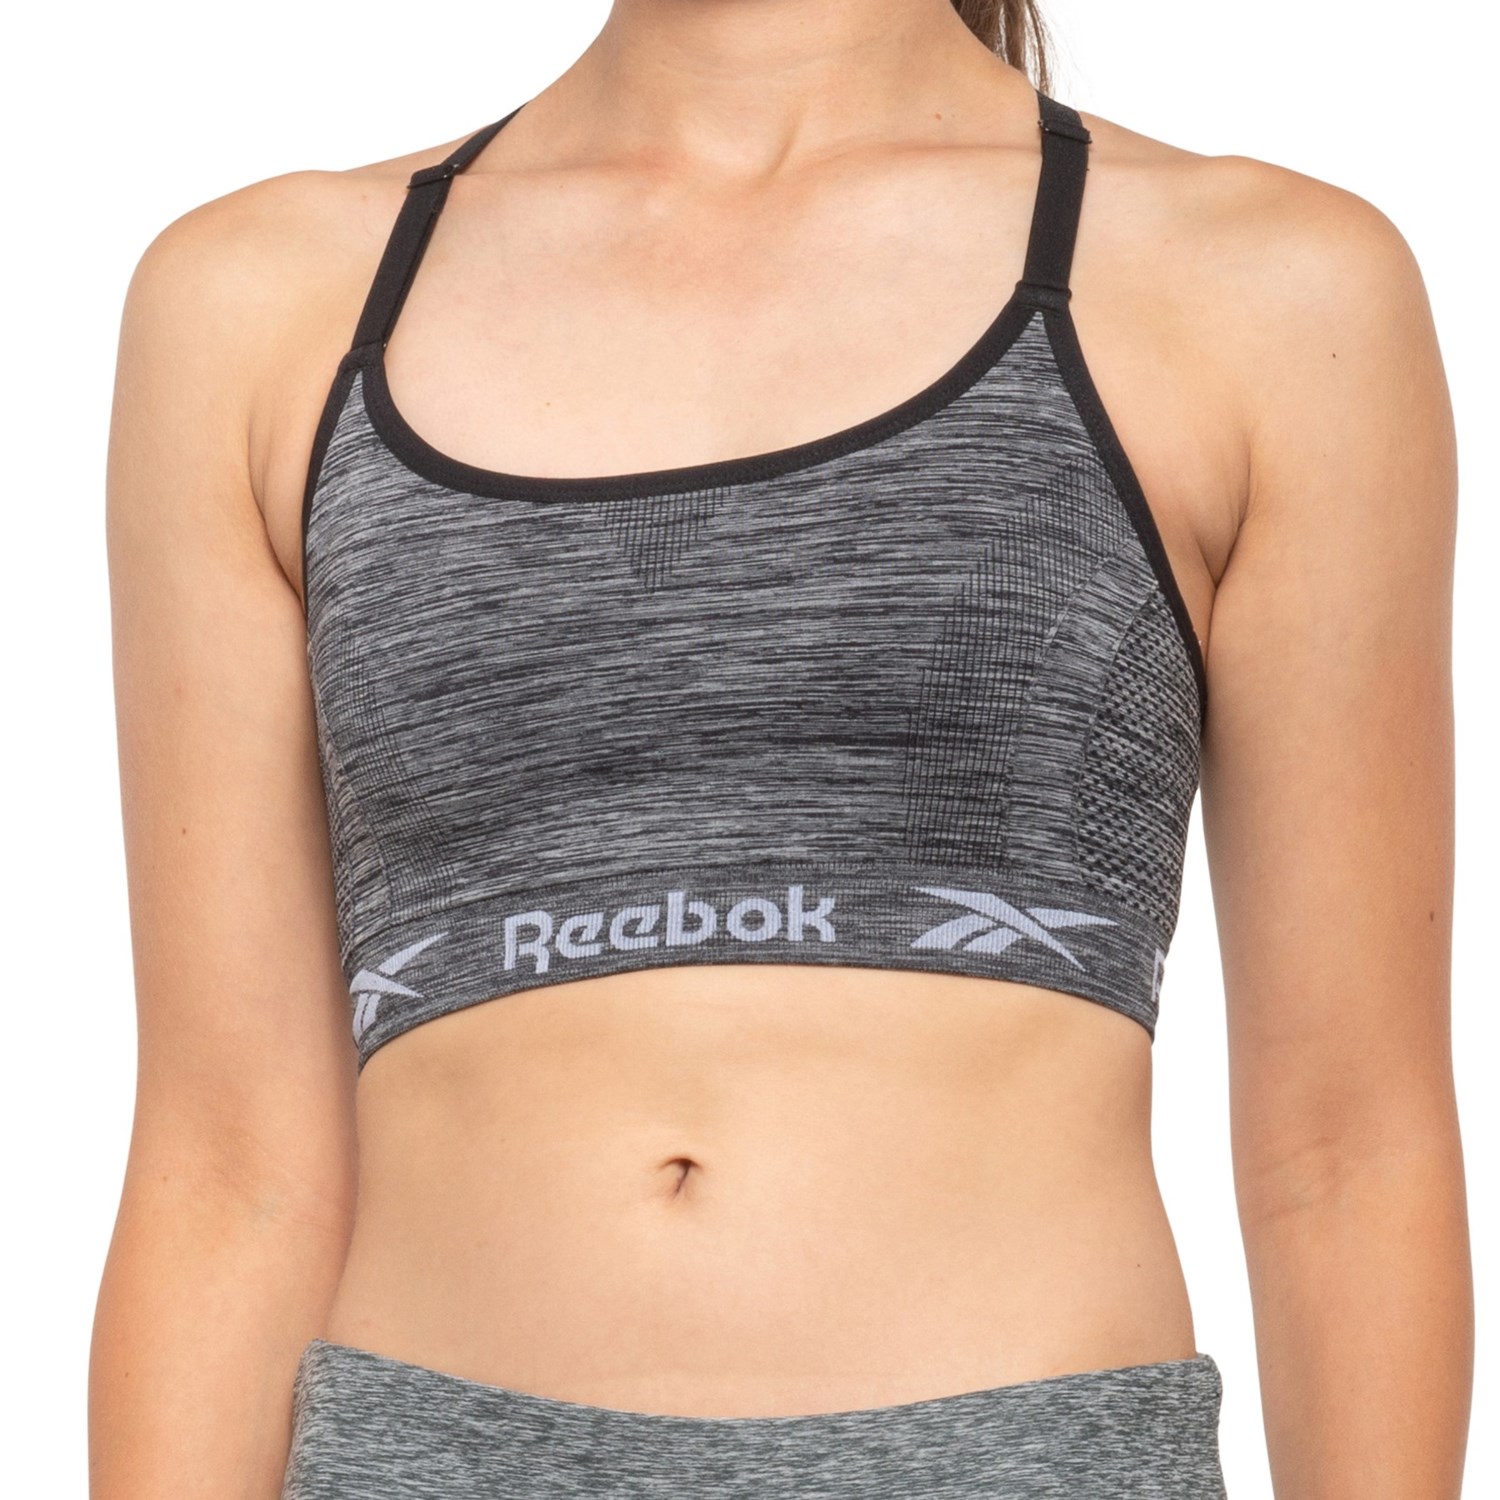 new reebok sports bra